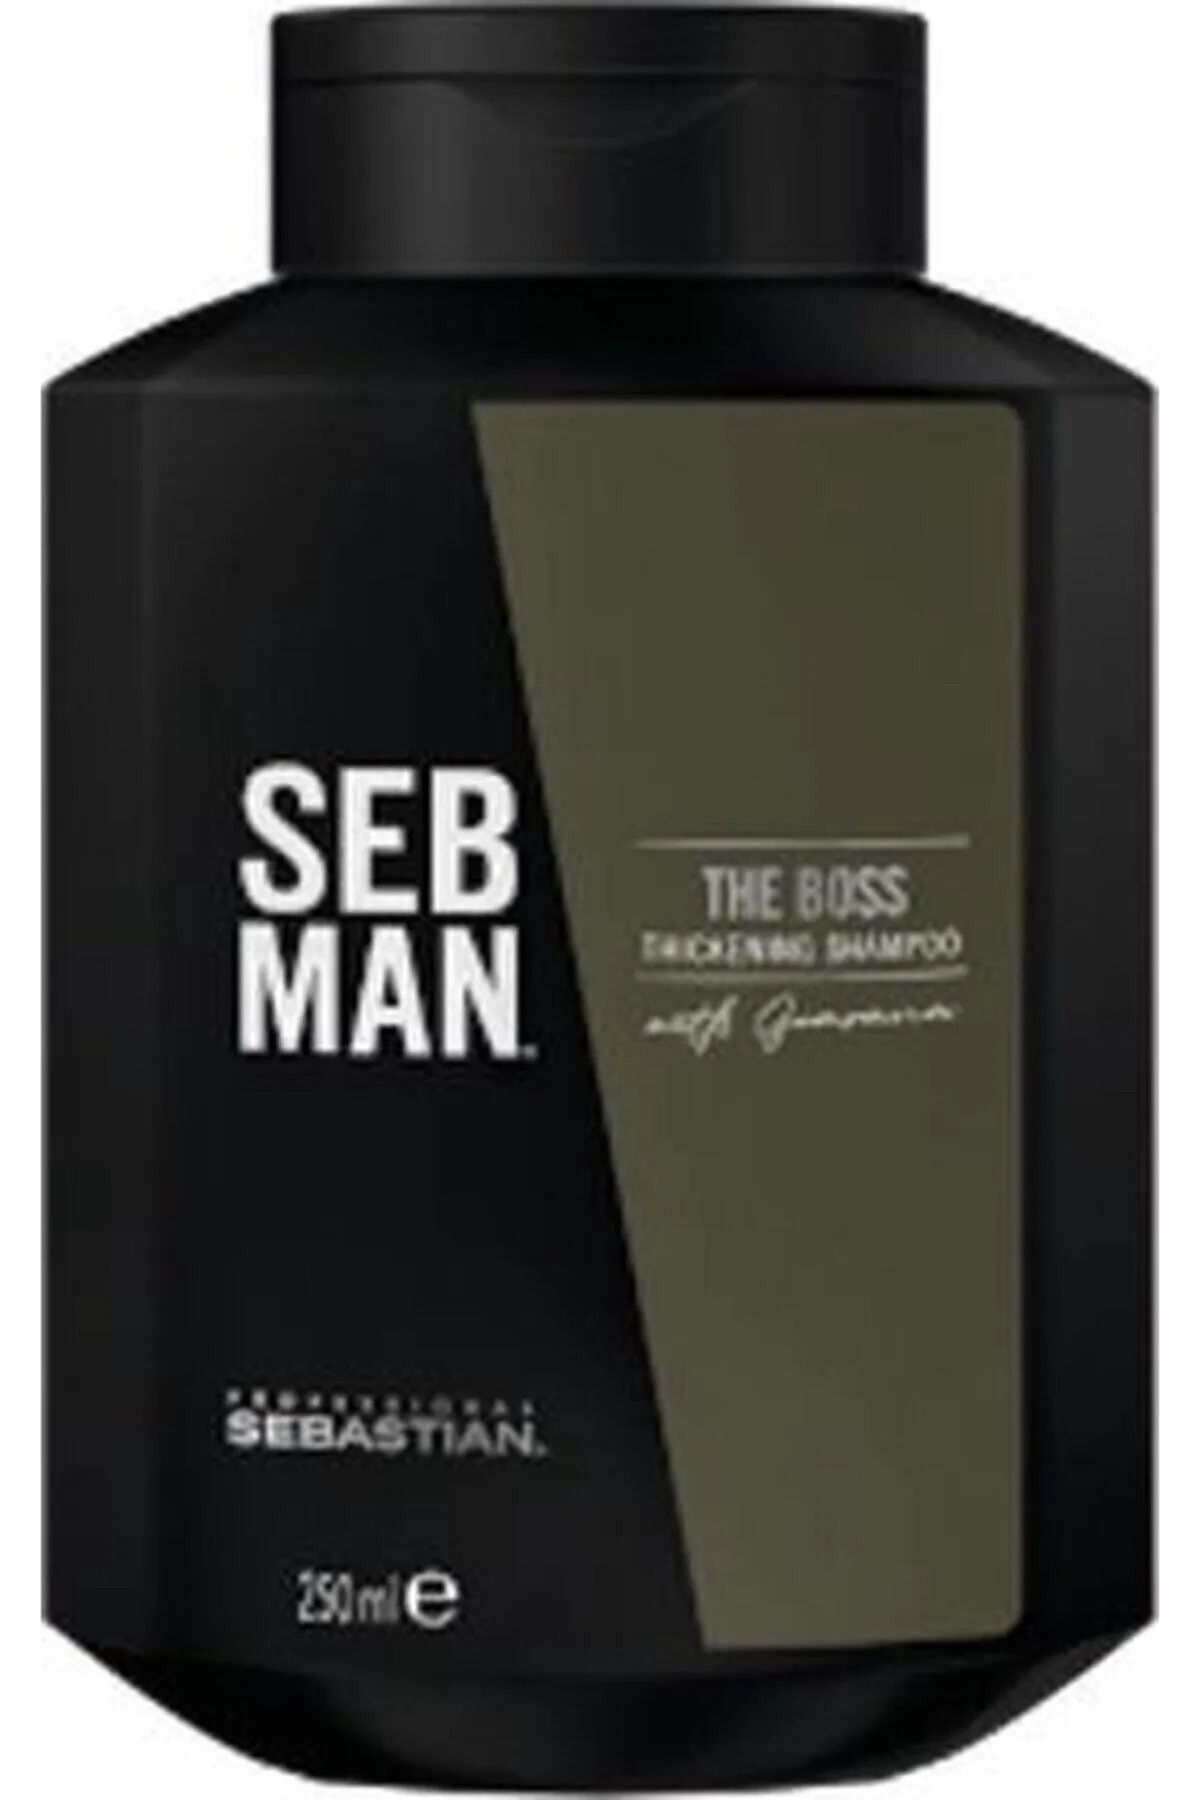 Sebastian SEB MAN THE BOSS SAÇ İnce Saçlı Saçlar İçin DOLGUNLAŞTIRICI ŞAMPUAN 250 MLSED64631331316131631..-.--